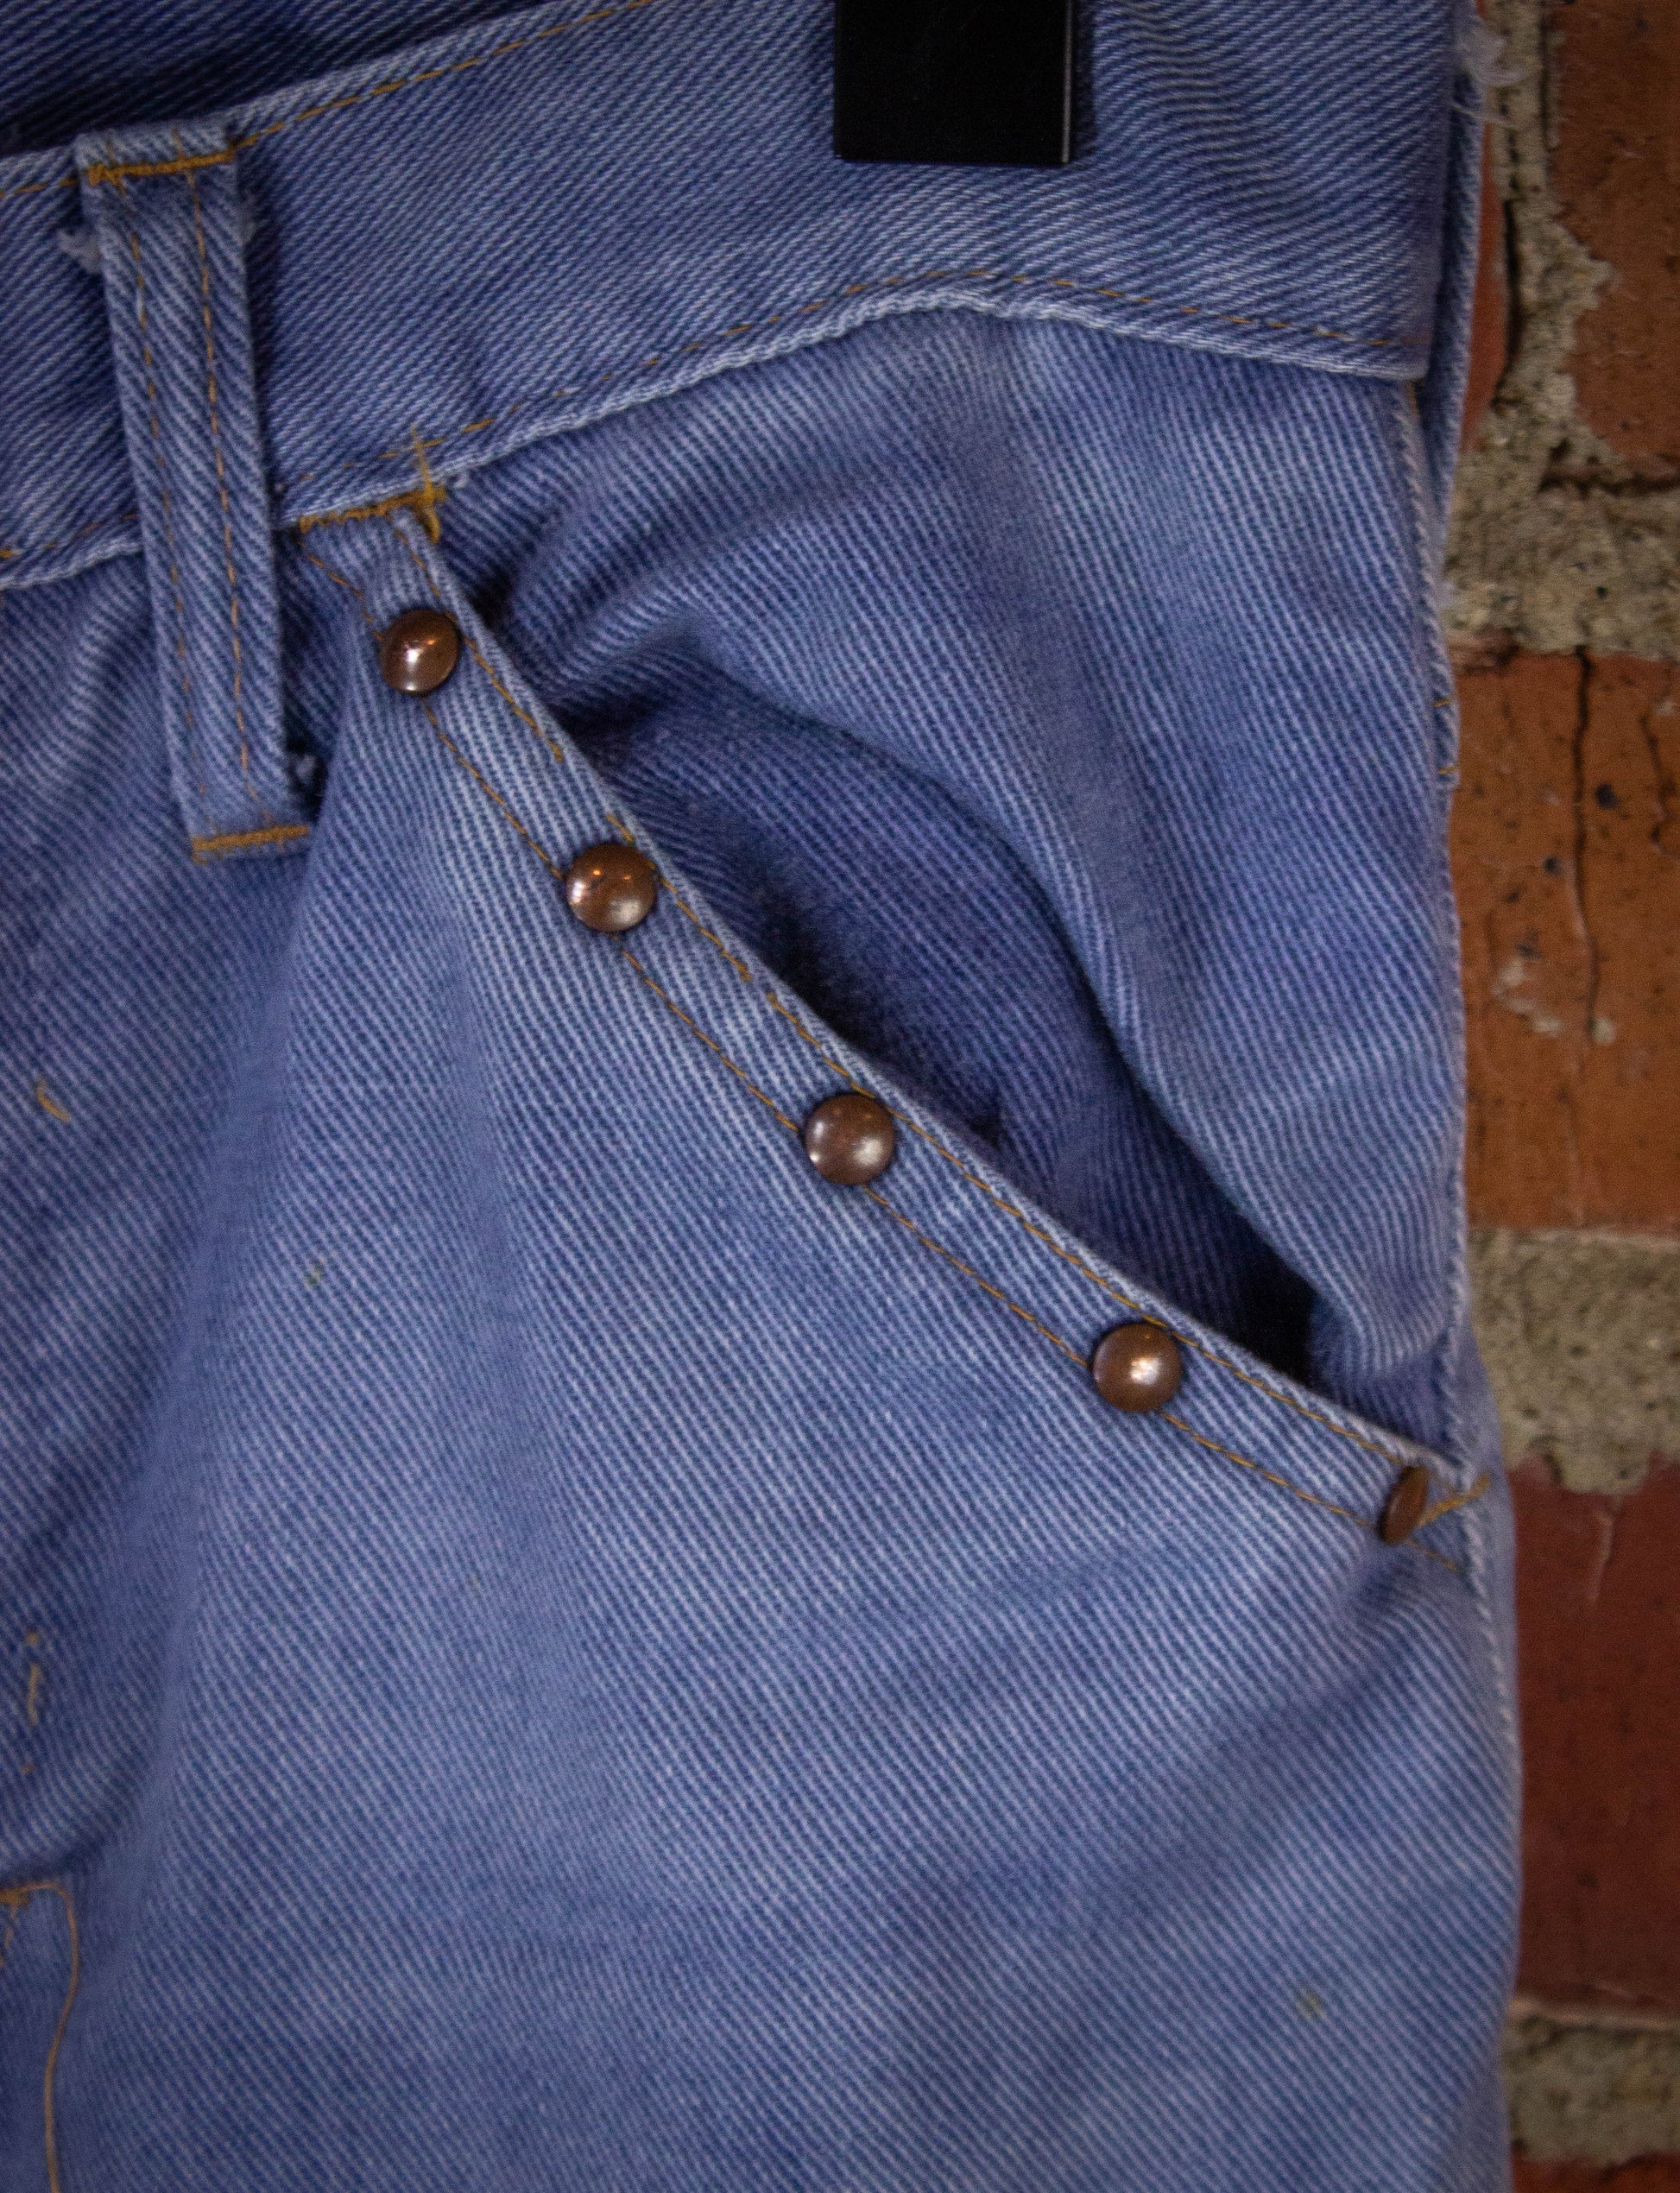 Vintage Studded Bell Bottom Denim Jeans 70s Light Wash 24x30